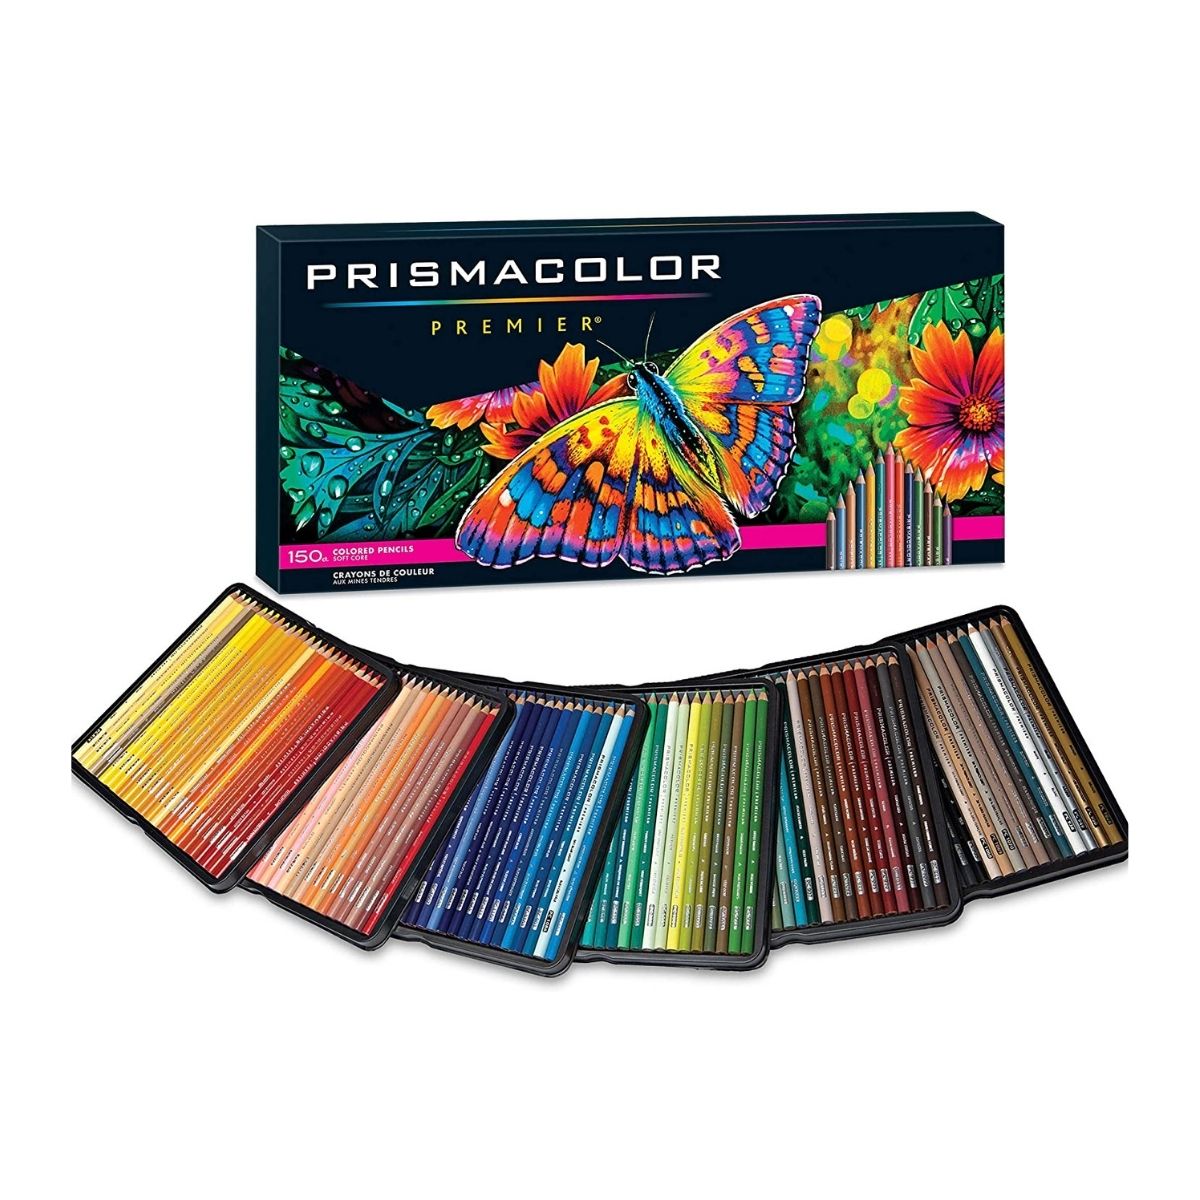 https://marchante.mx/cdn/shop/products/Lapices_de_Colores_Profesionales_Prismacolor_Premier_150_piezas1.jpg?v=1643744883&width=1200